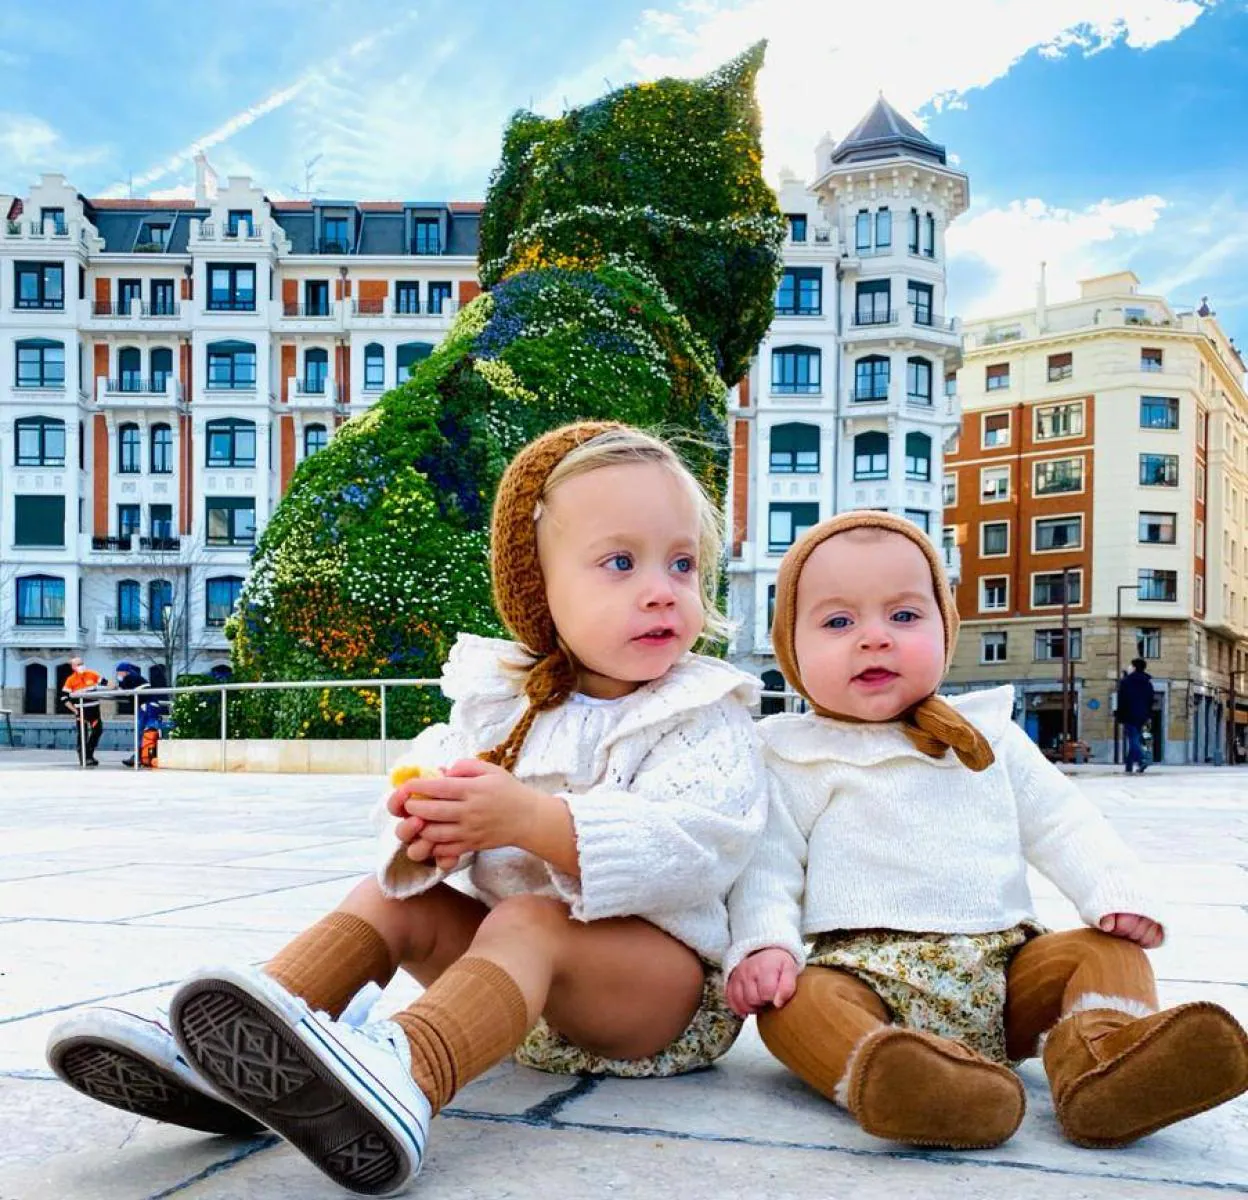 Las hermanas Bilbao que triunfan con sus looks: Nora y Ariane, las de Bilbao de 1 y 3 años que triunfan sus looks | El Correo